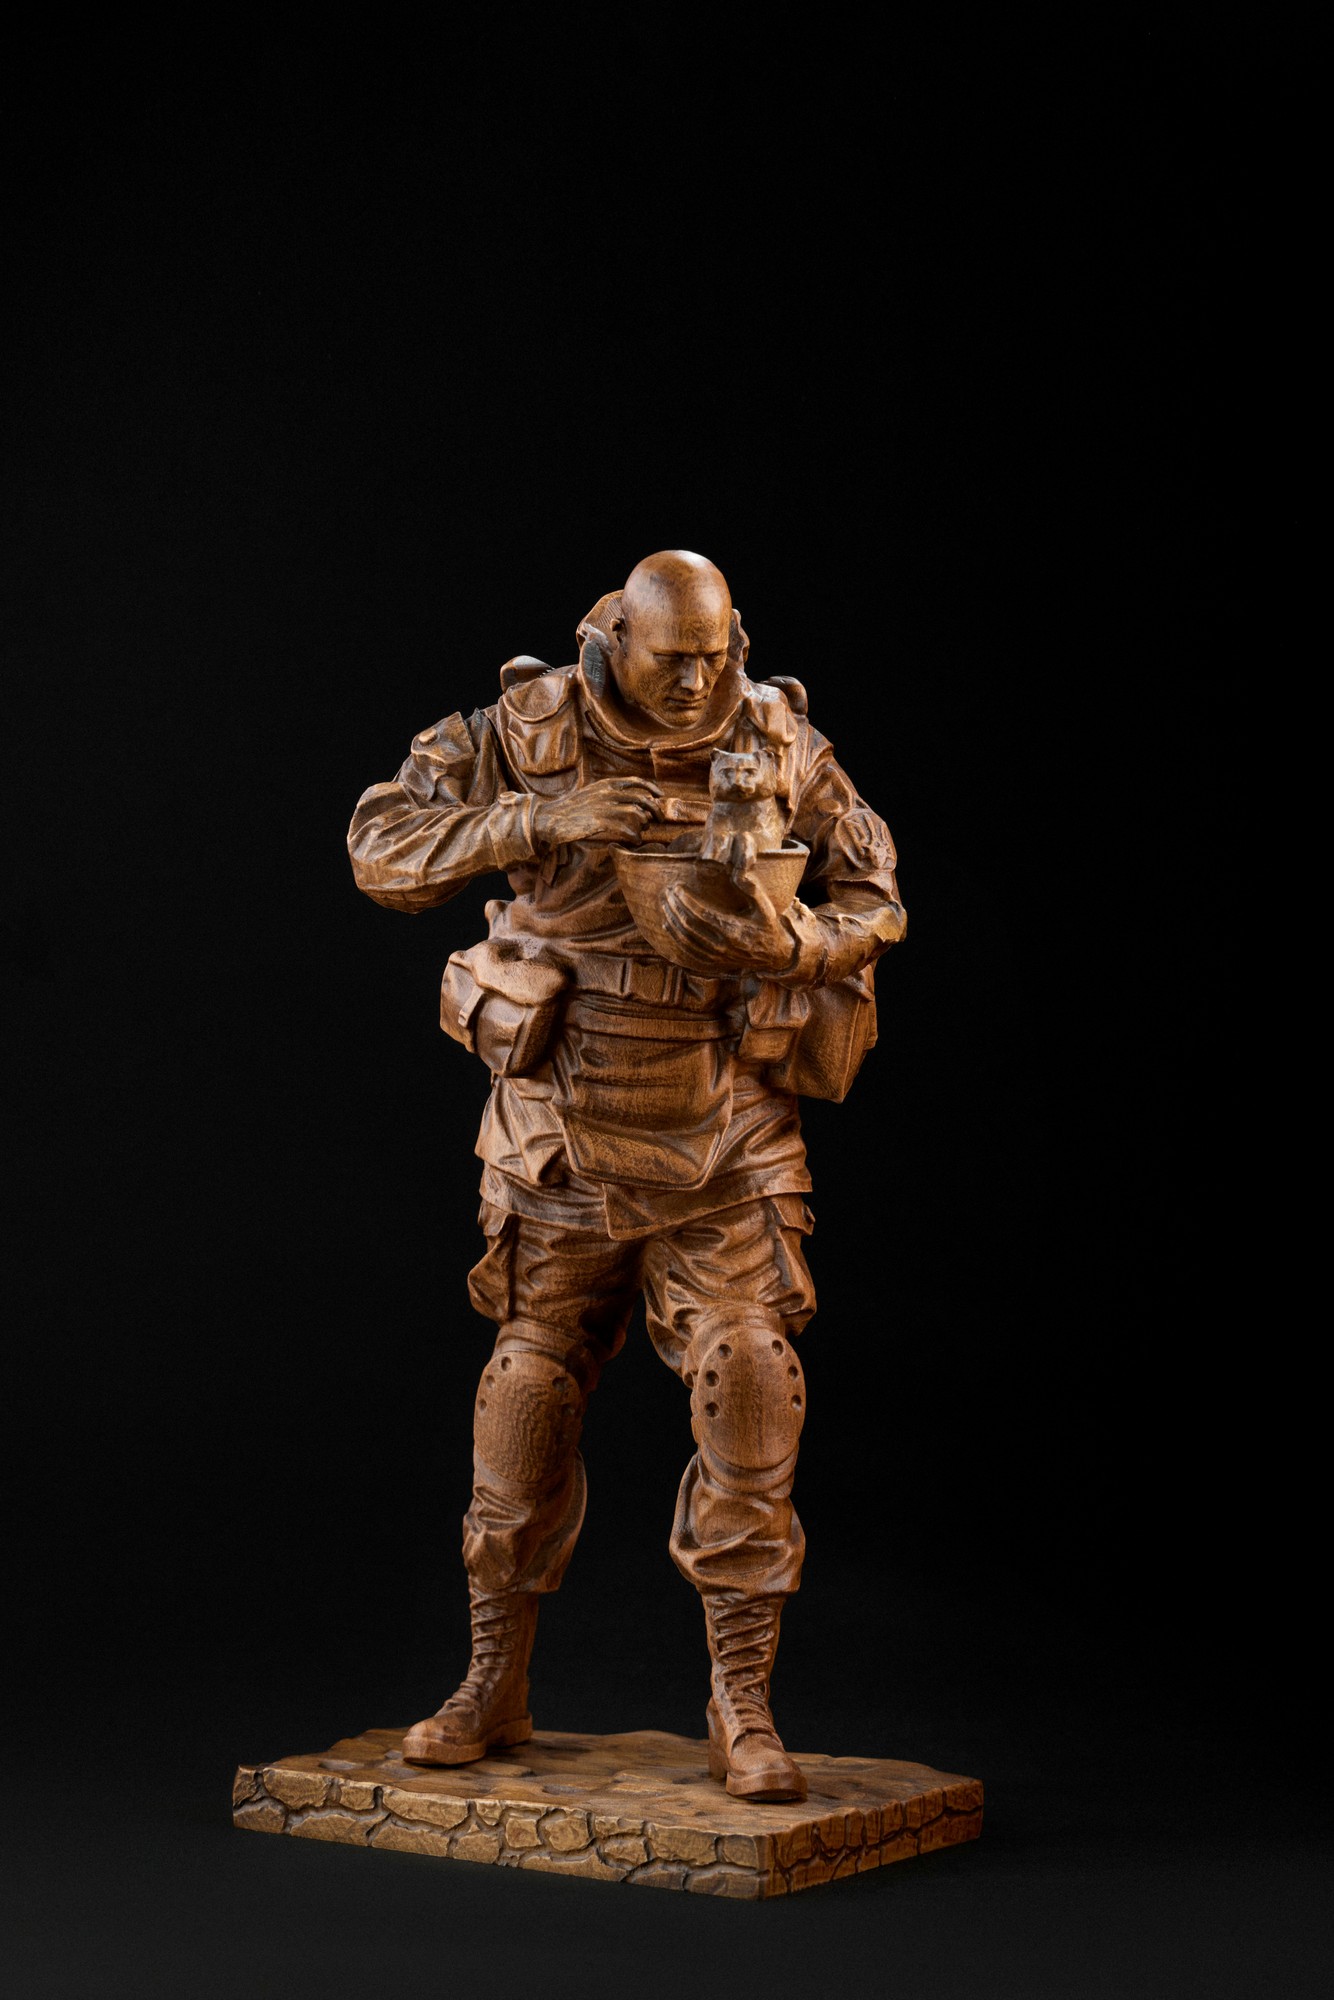 Military figure #3+military box